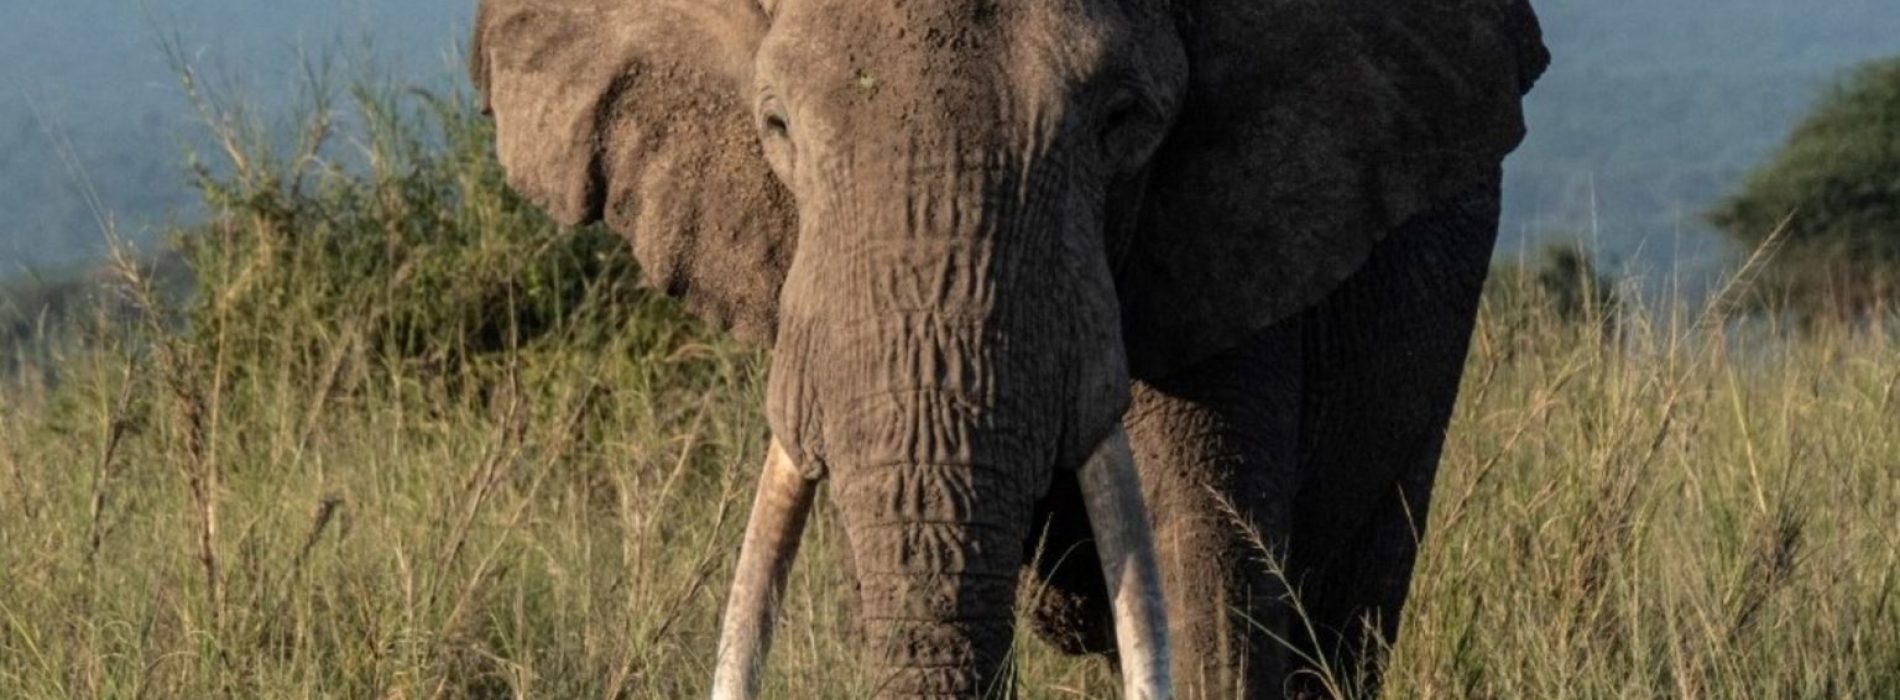 Van stroperij tot avocado’s, Kenia’s olifanten worden geconfronteerd met een nieuwe bedreiging